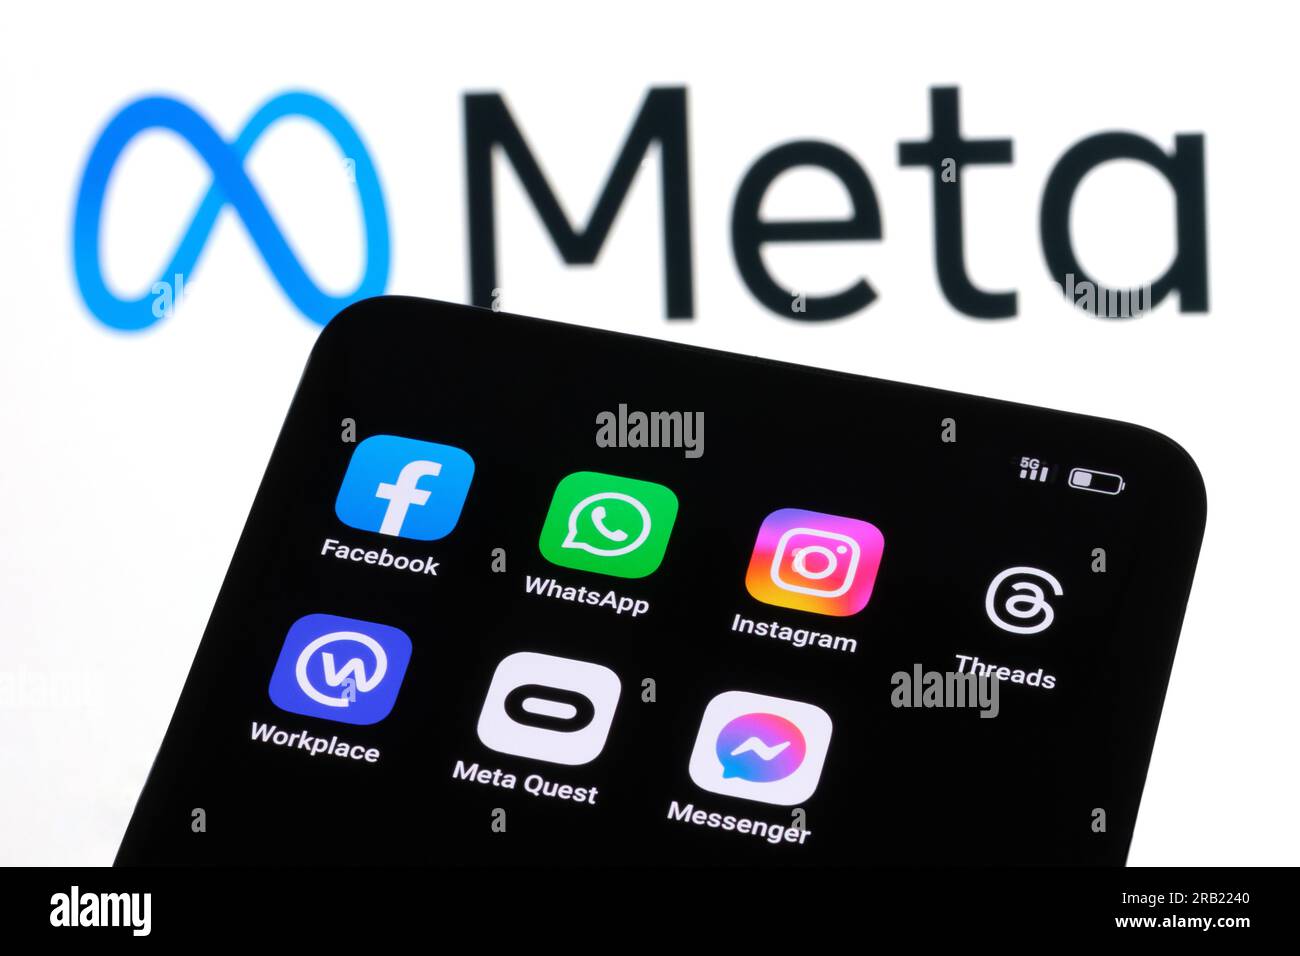 Toutes les applications Meta Platform sur l'écran du smartphone Facebook, Instagram, WhatsApp, Messenger, threads, Meta Quest, lieu de travail. Concept Stafford, États-Unis Banque D'Images